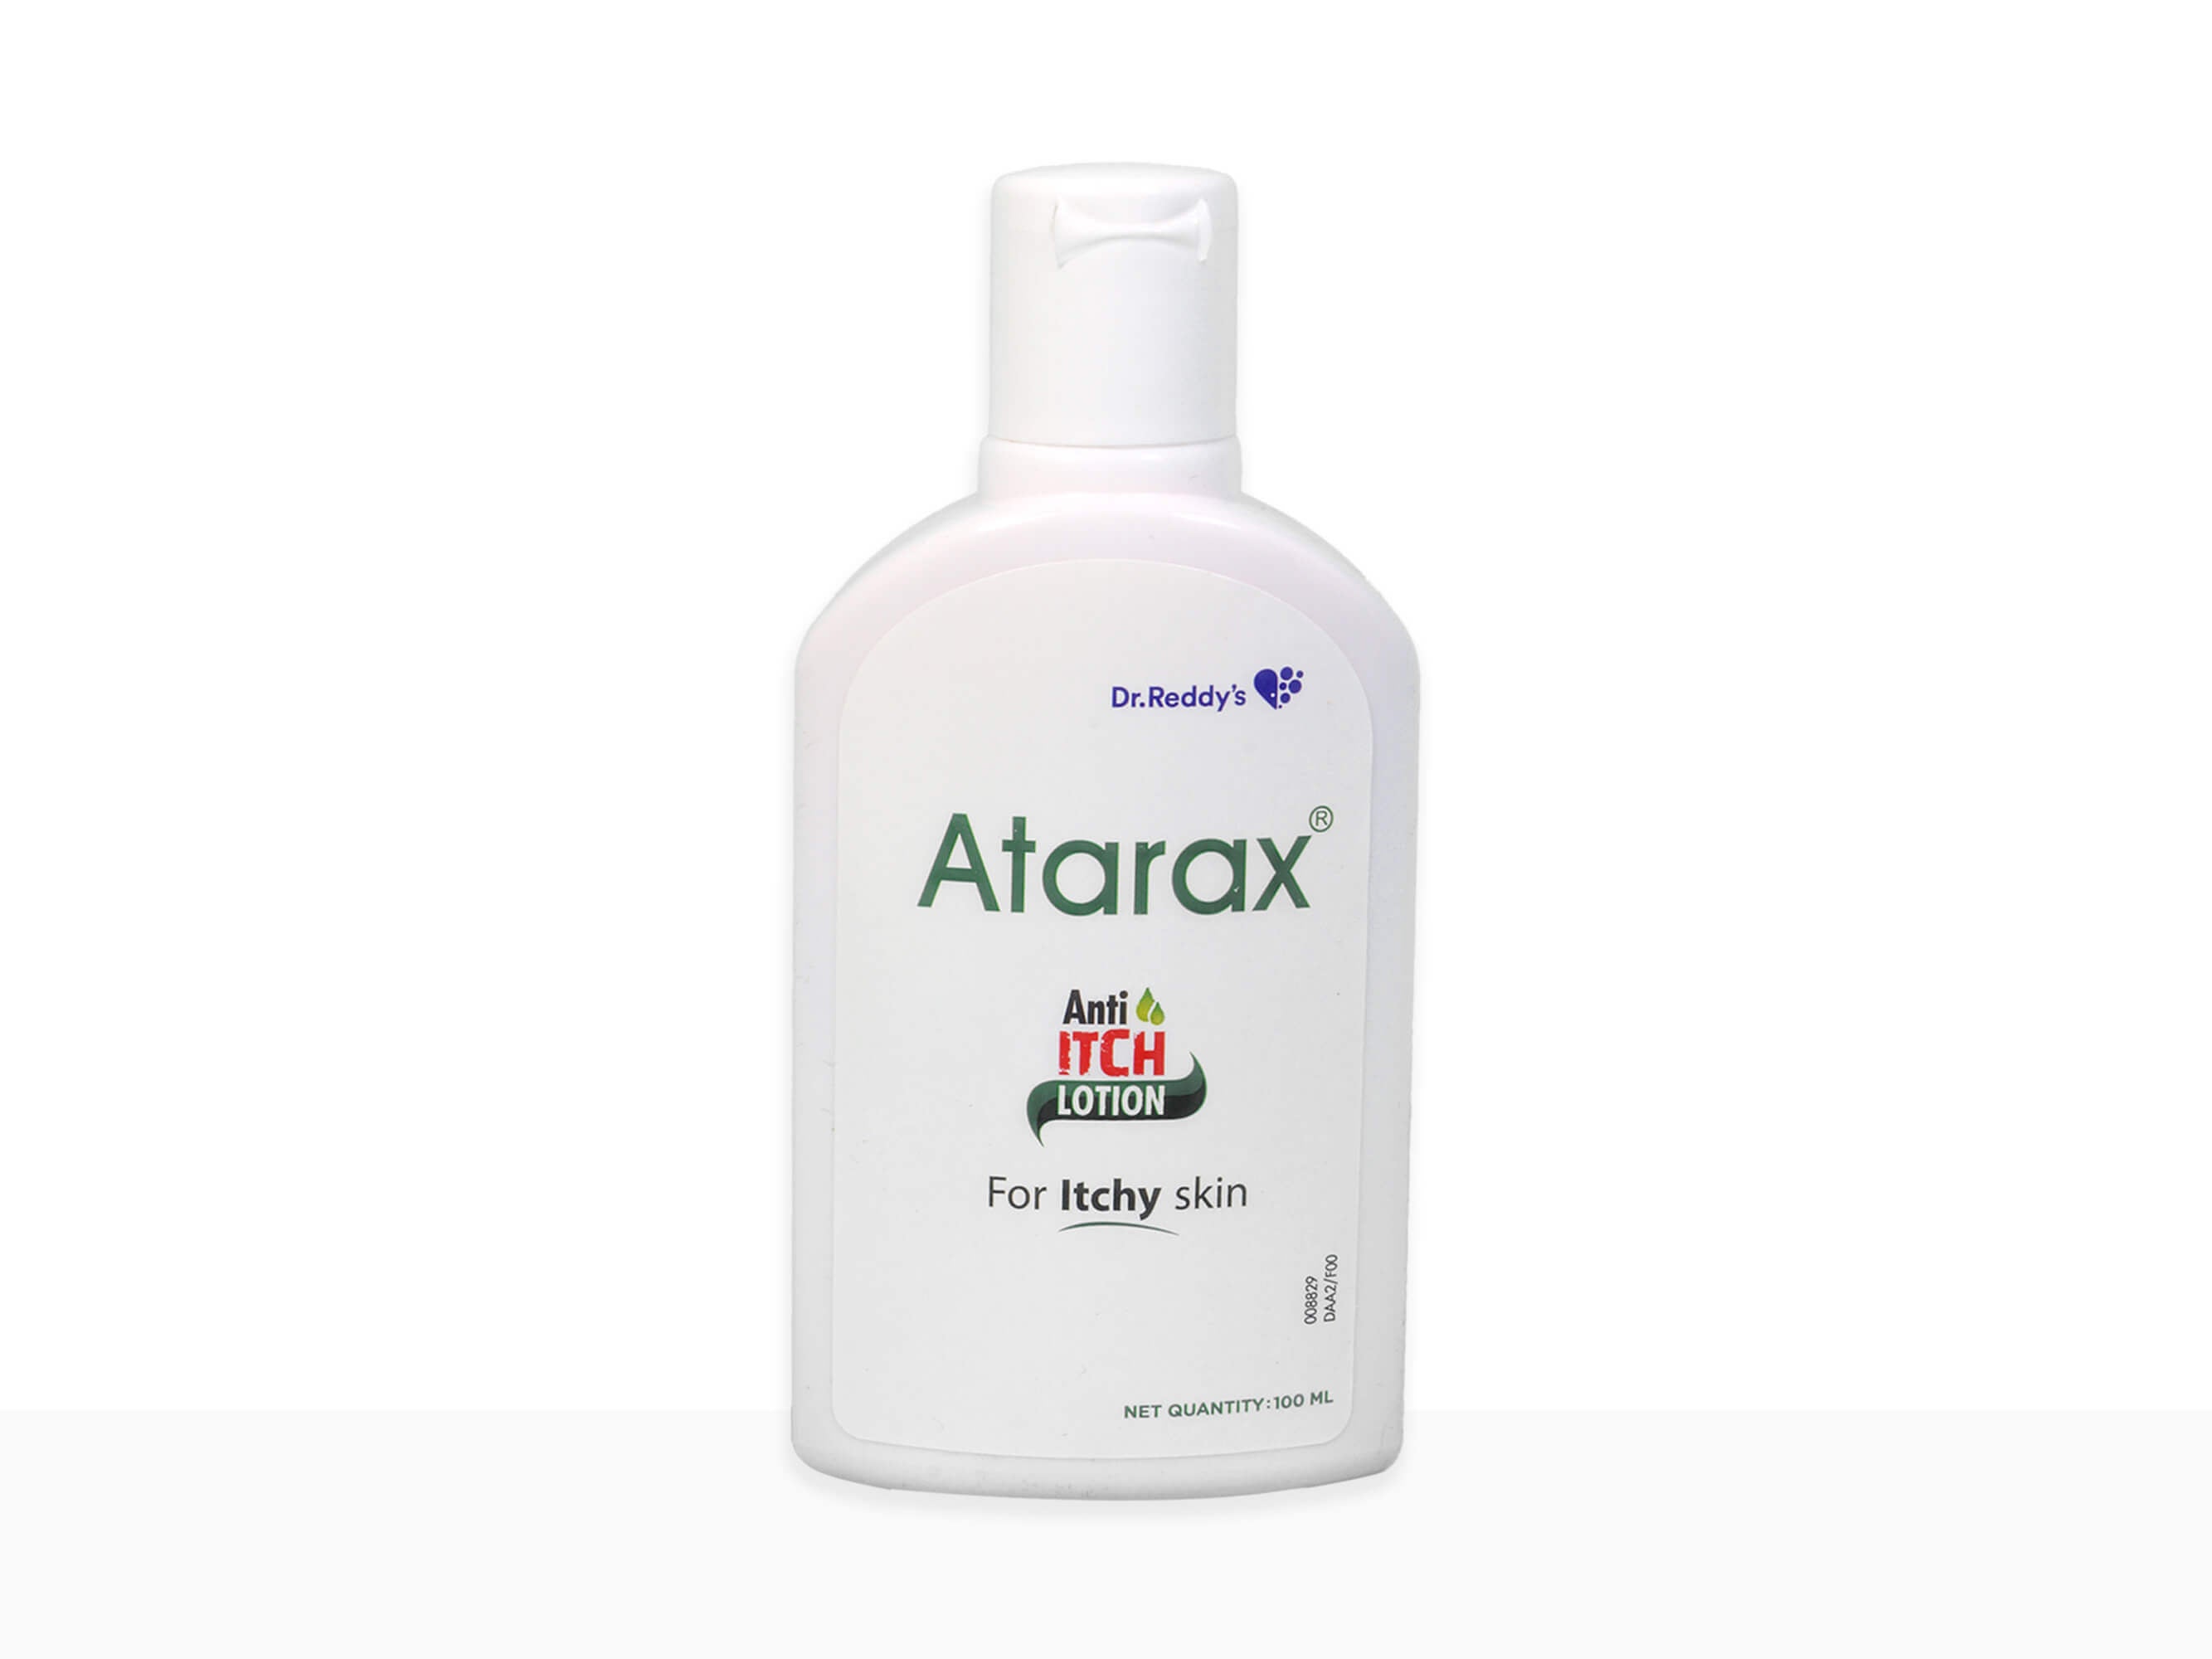 Atarax anti itch lotion - Clinikally